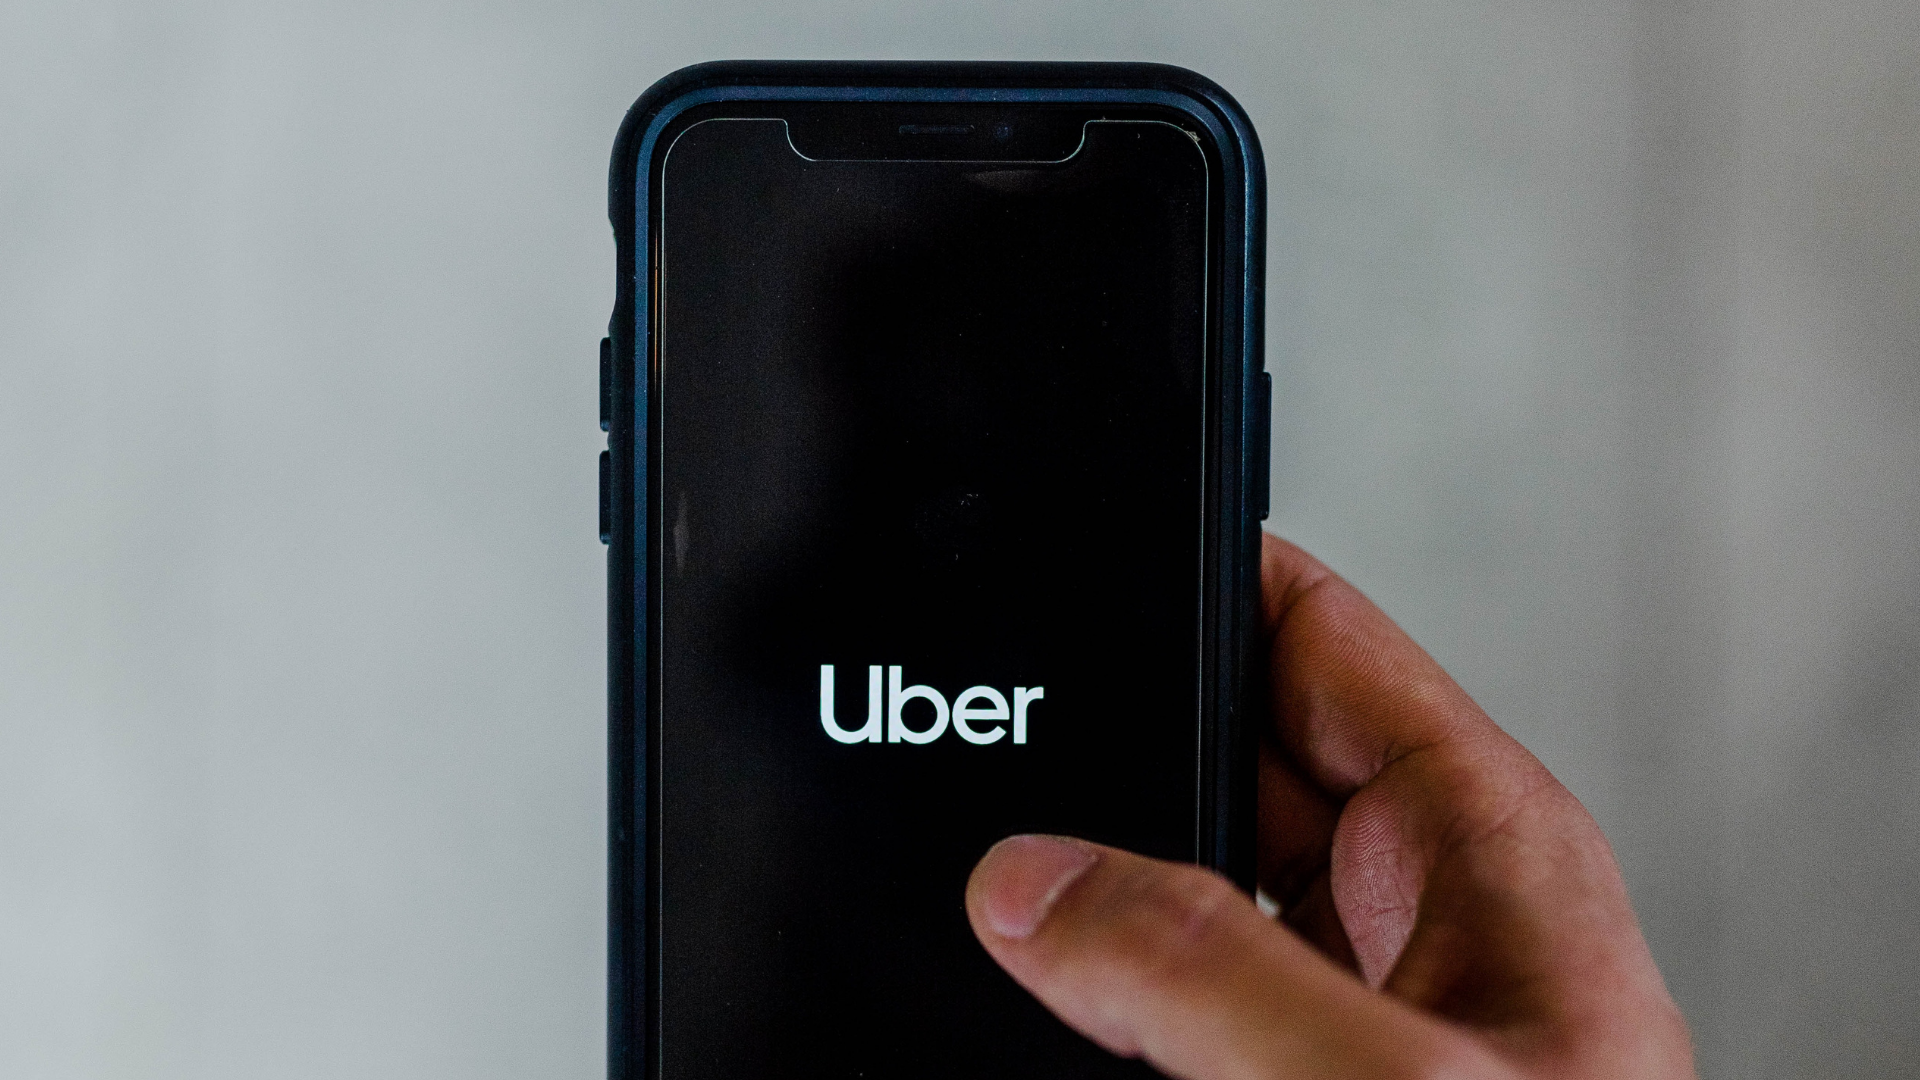 Uber lucra US$ 1,1 bilhão com alta em viagens e venda de partes da empresa | Negócios